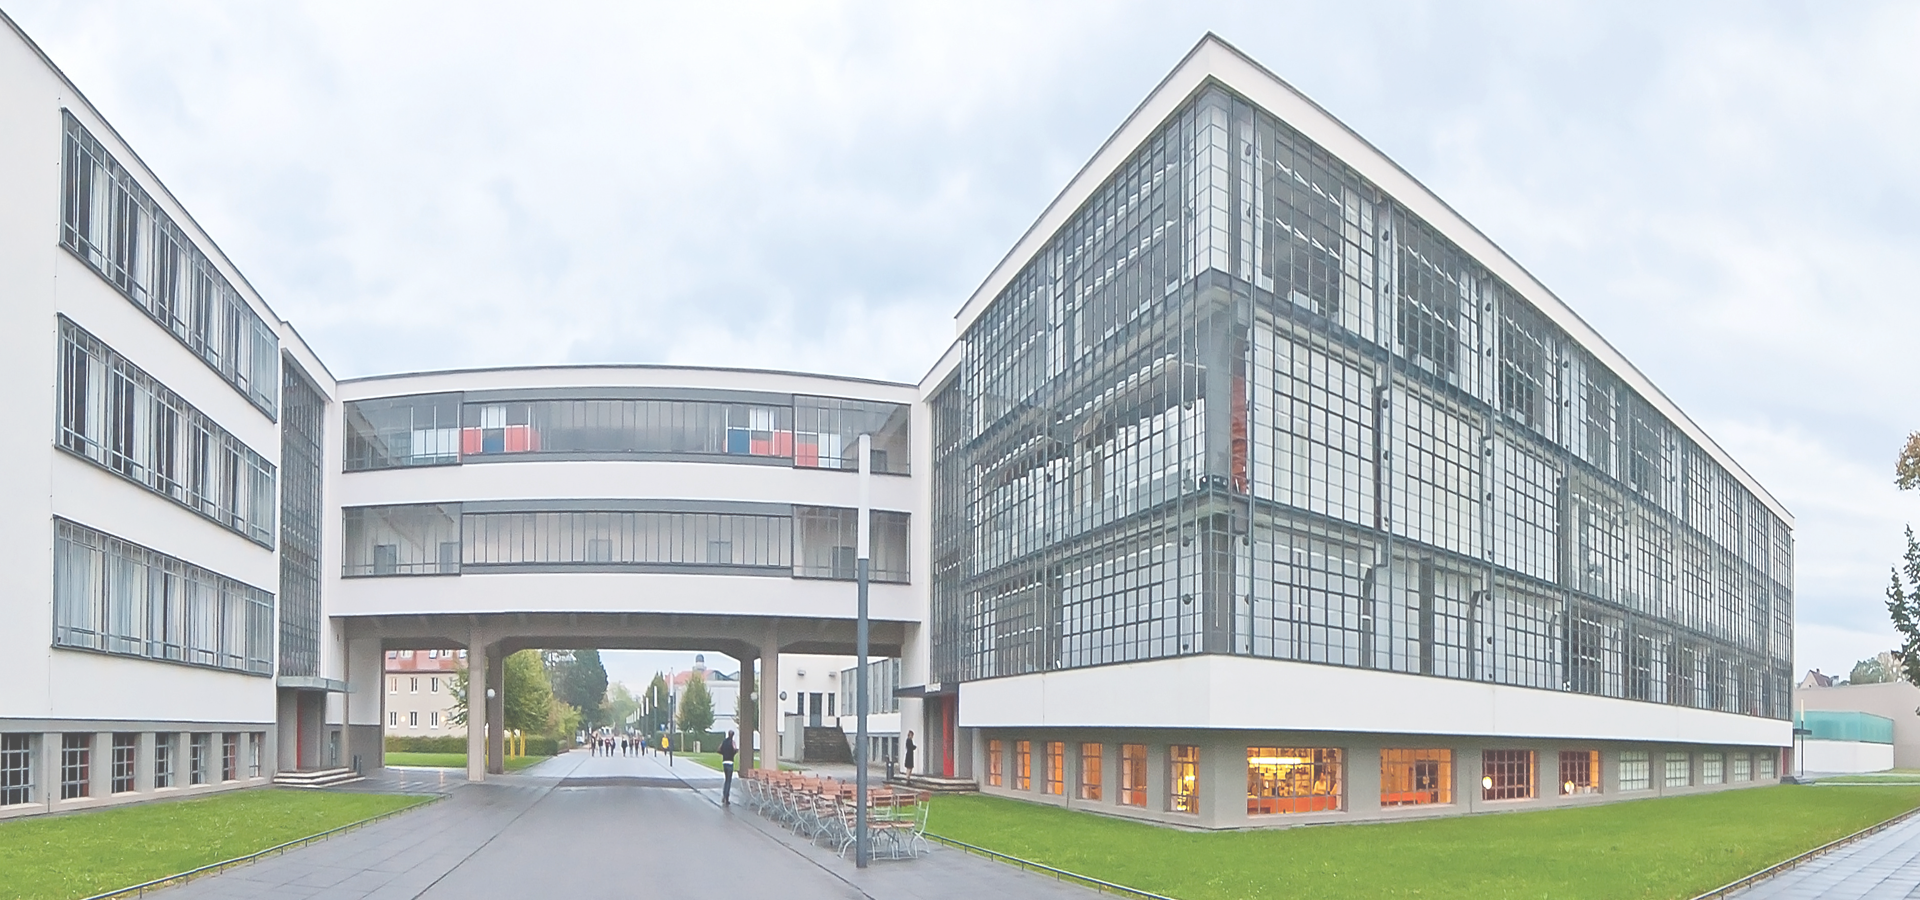 <b>Dessau, Saxony-Anhalt, Germany</b>